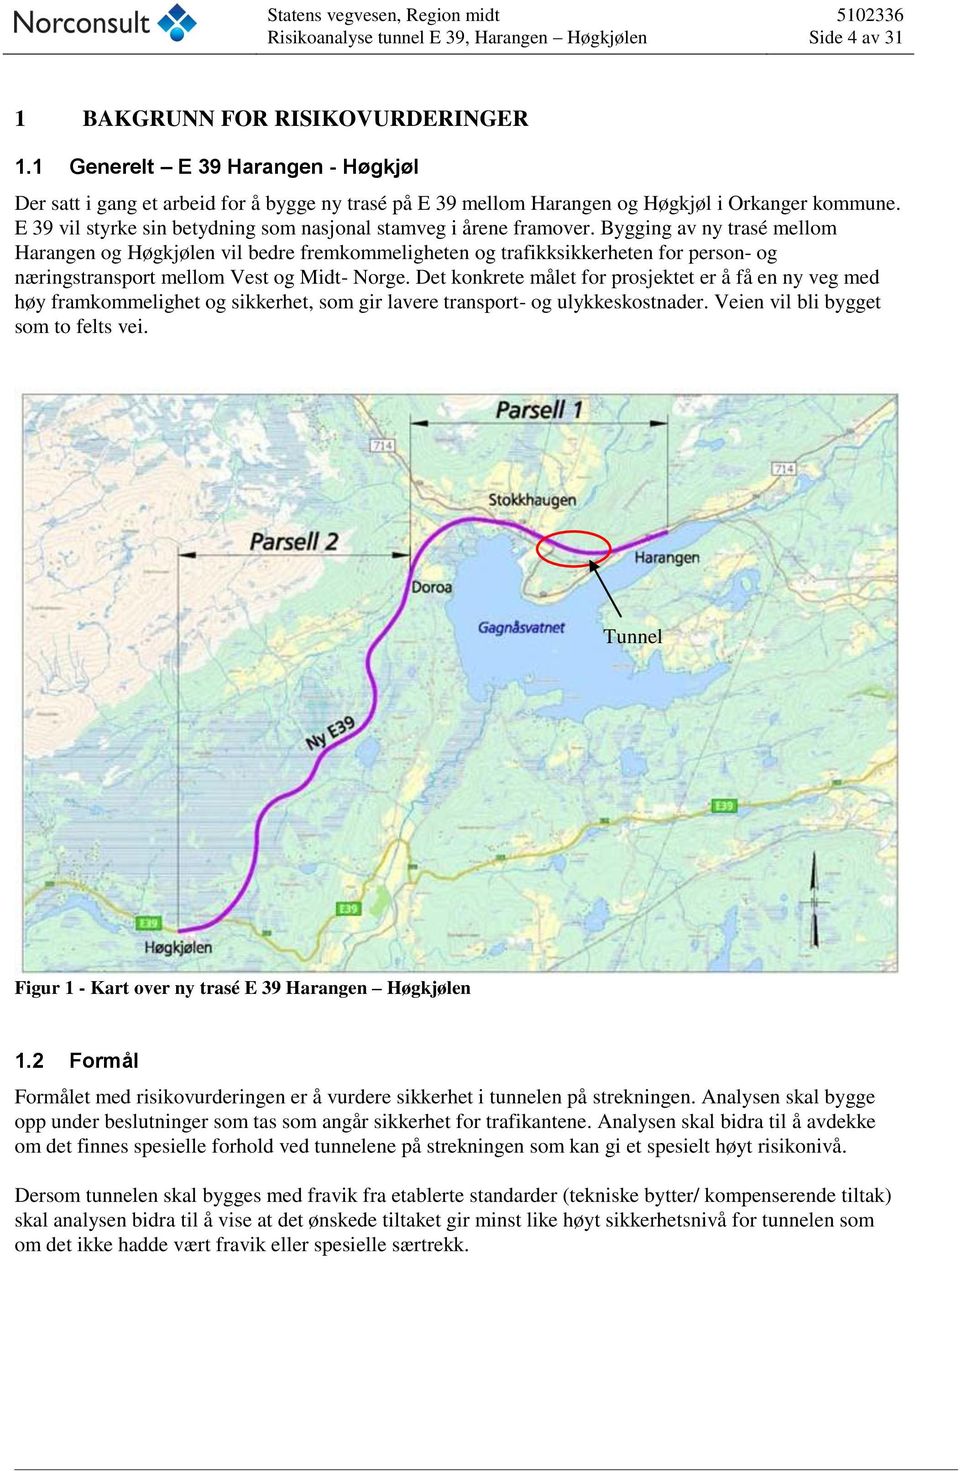 Bygging av ny trasé mellom Harangen og Høgkjølen vil bedre fremkommeligheten og trafikksikkerheten for person- og næringstransport mellom Vest og Midt- Norge.